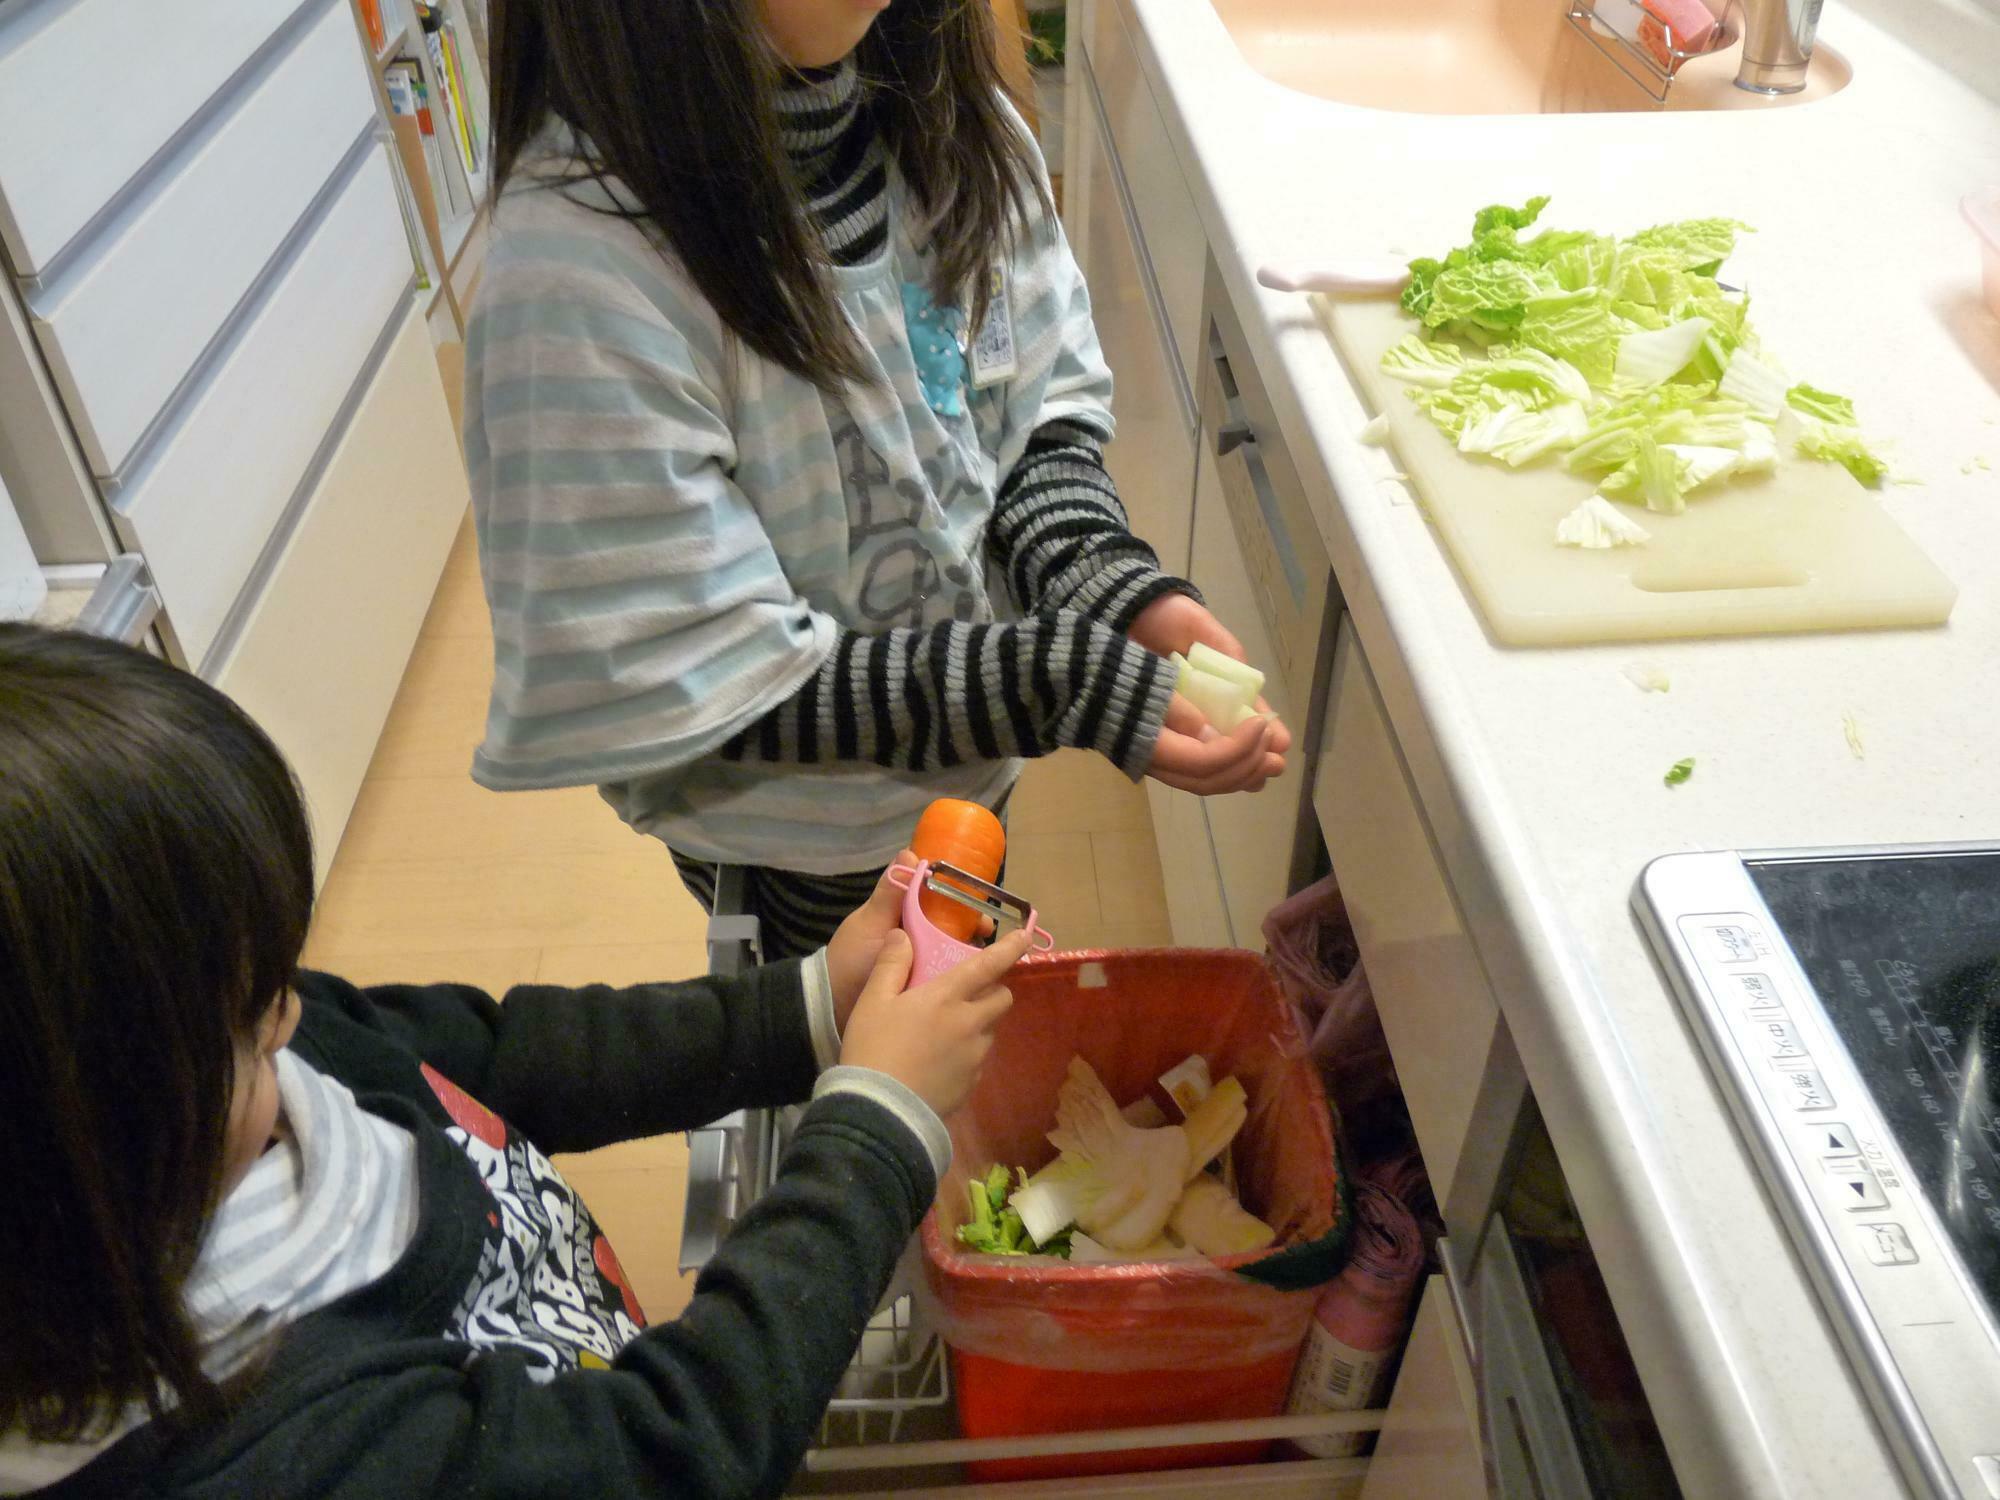 剥いた野菜の皮をそのままゴミ箱い入れる子どもたち。